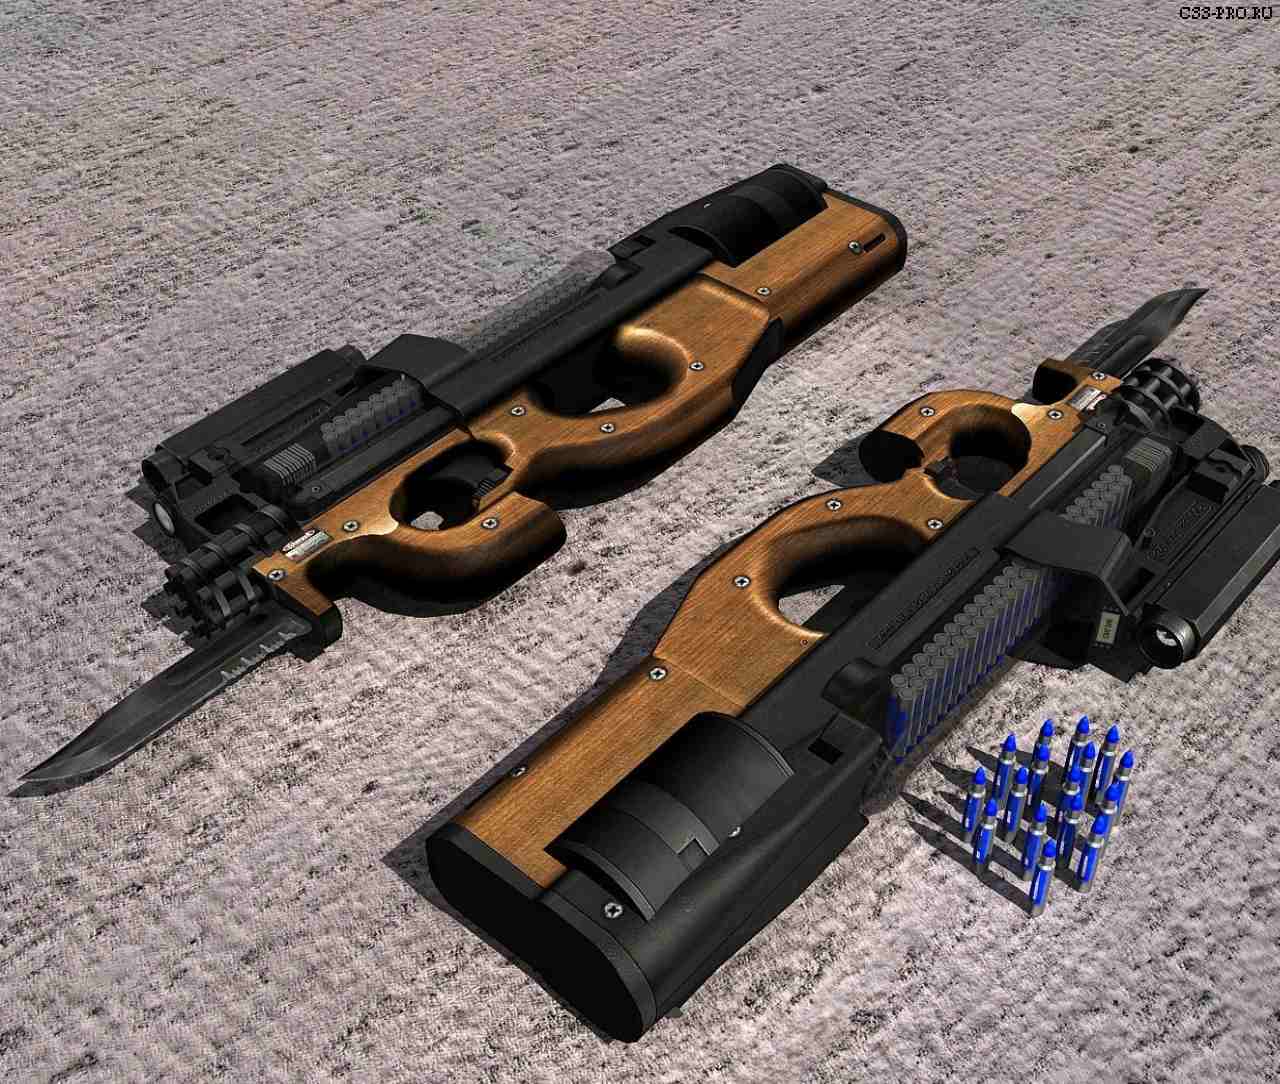 DarkElfa's P90 Mk. 3 With Teh Maestro's UV Bullets